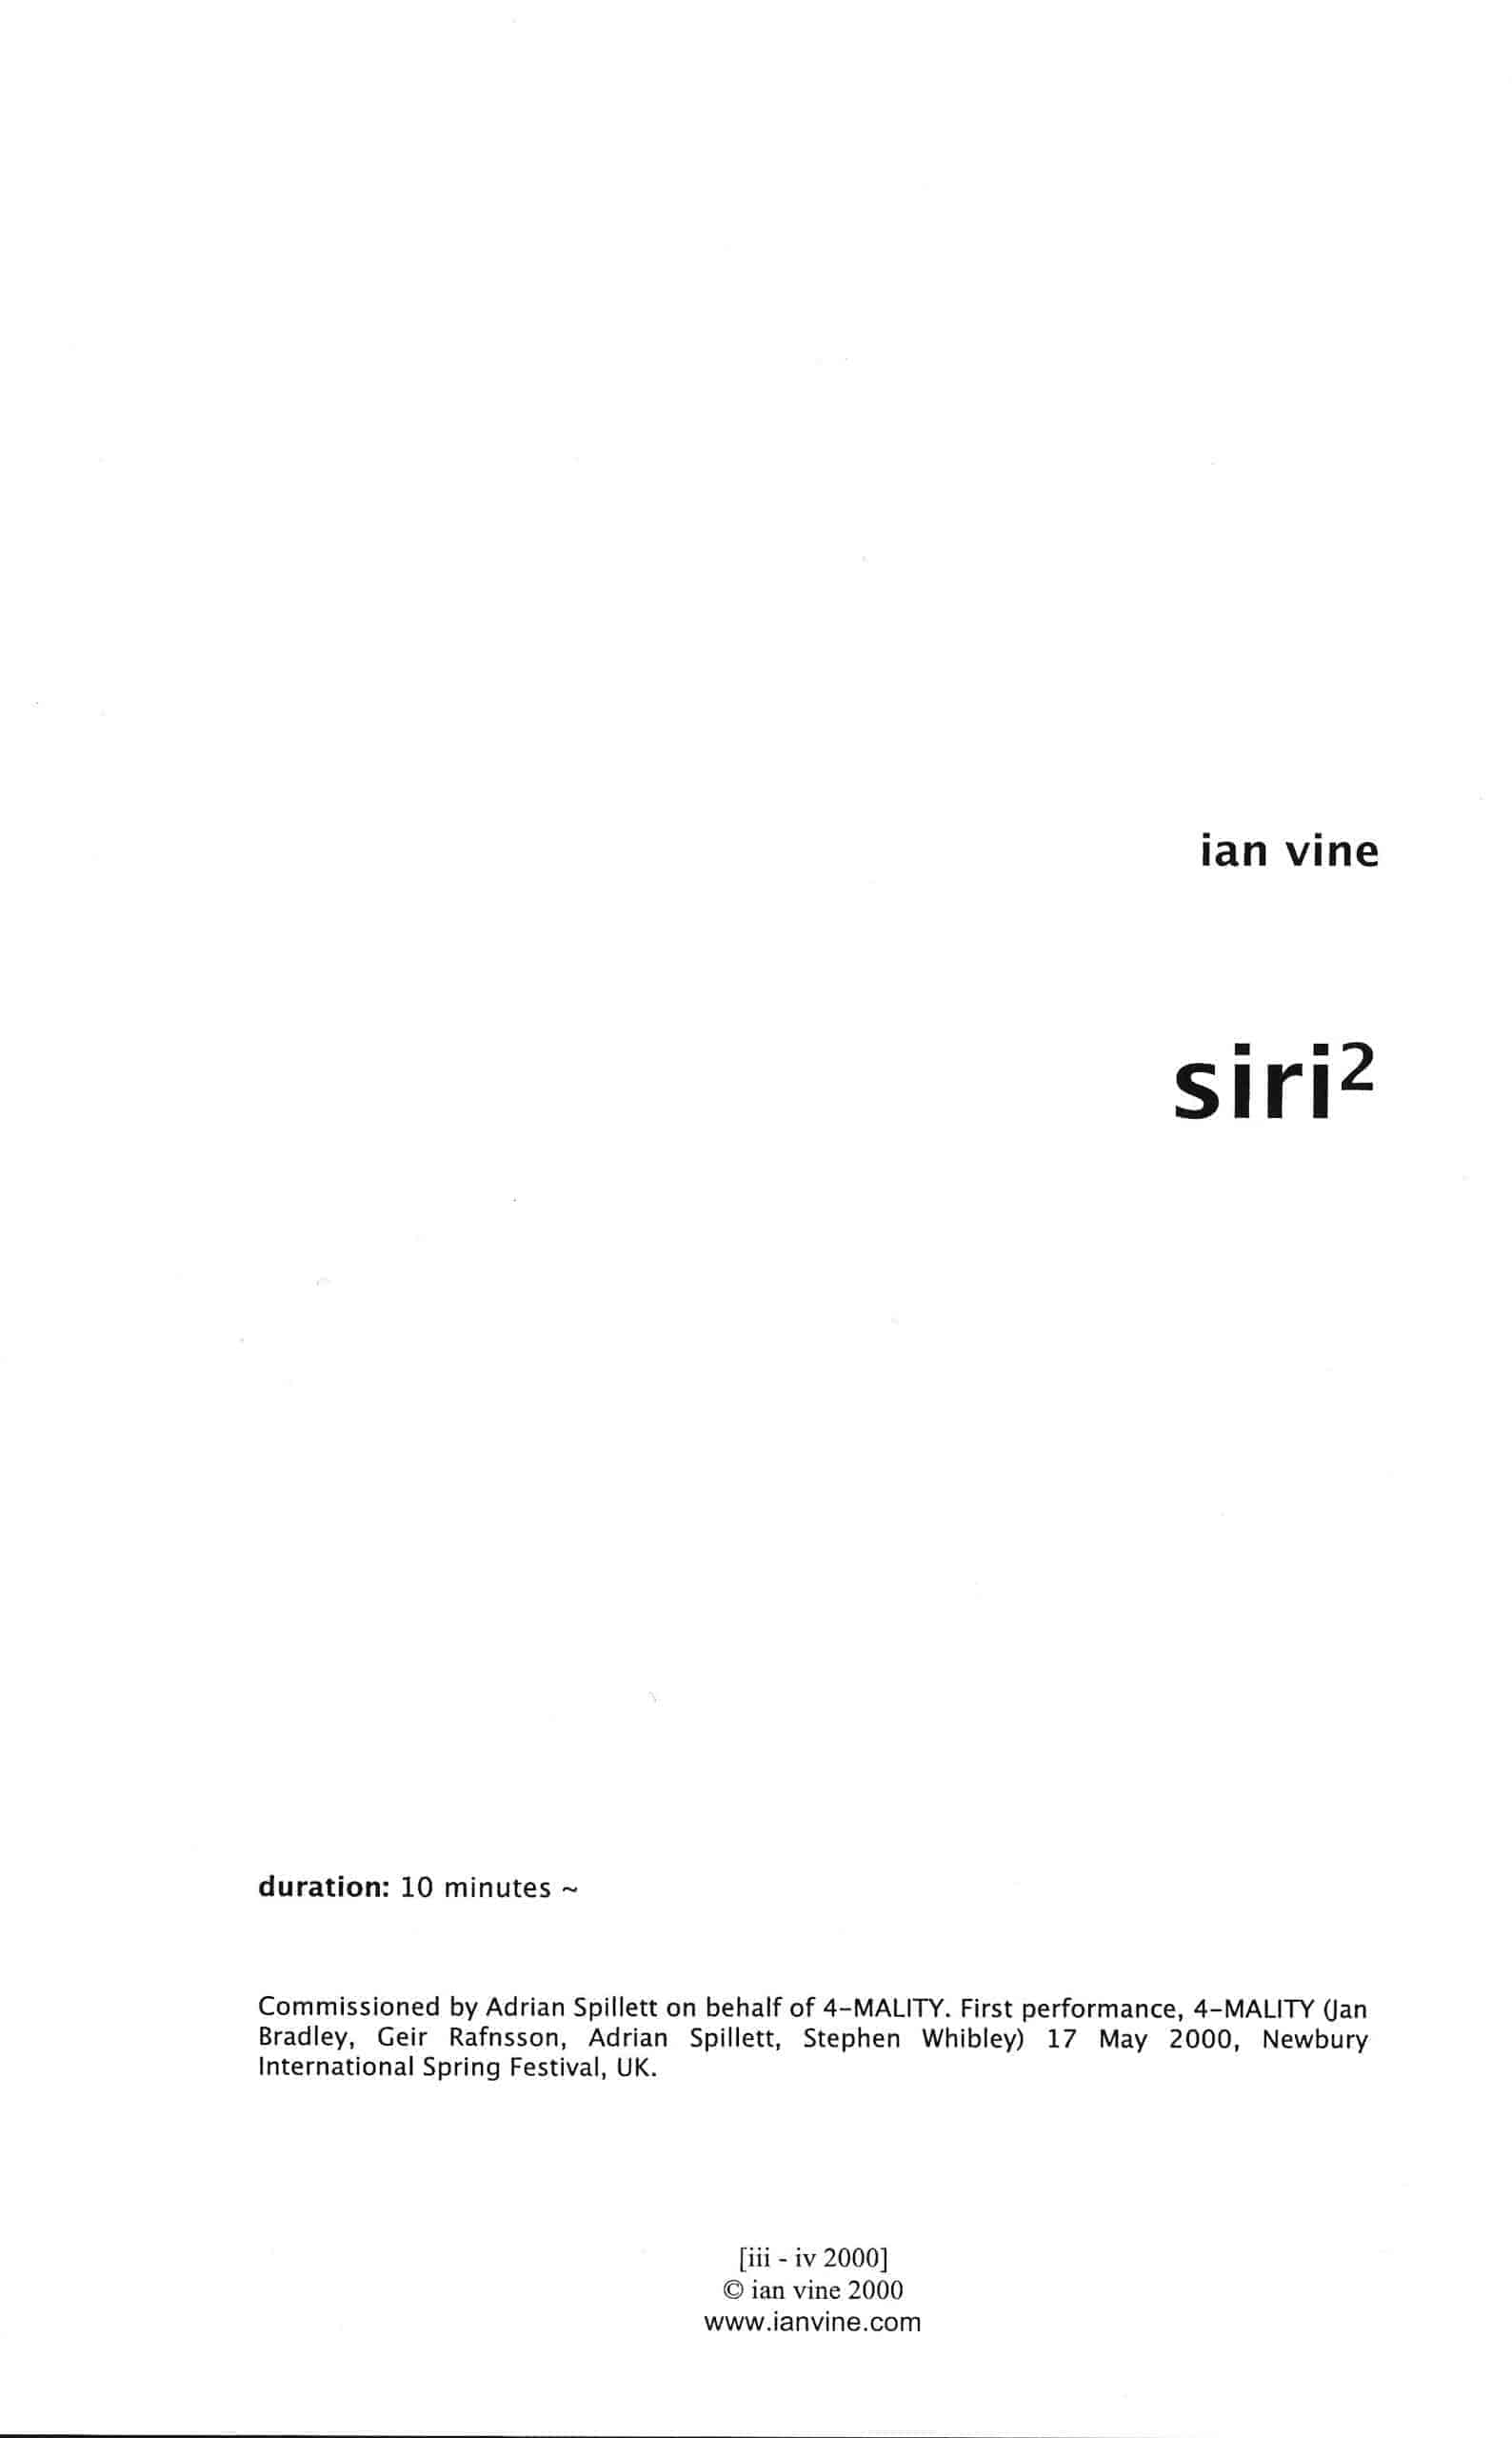 Siri 2 by Ian Vine